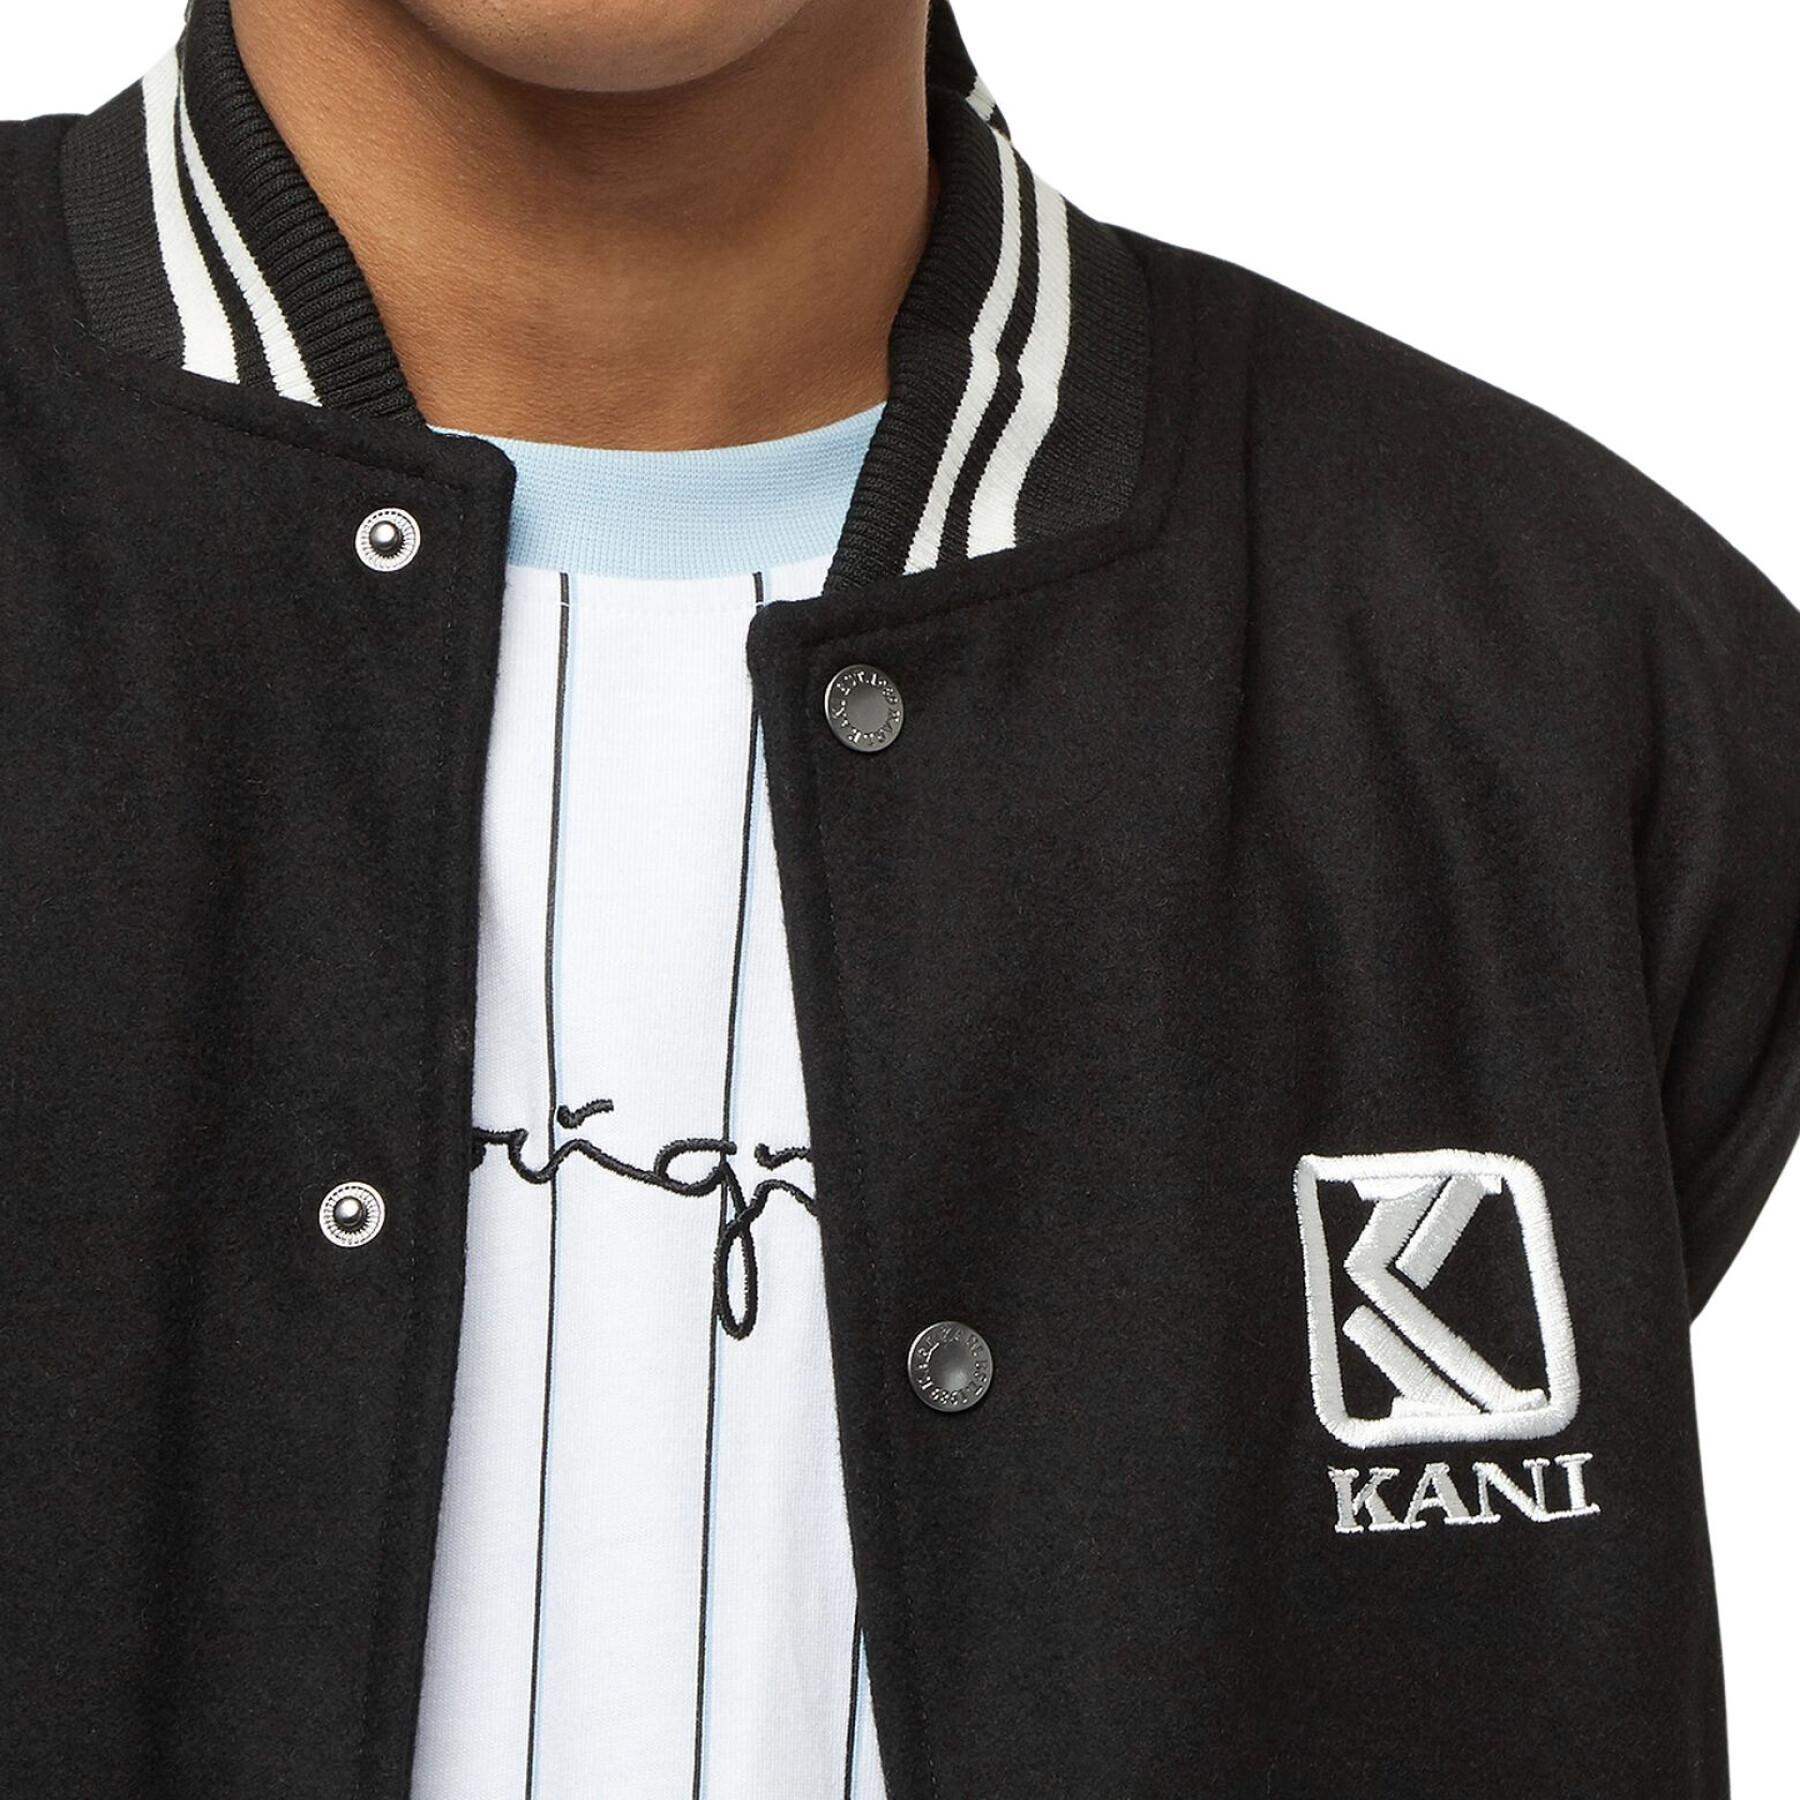 Jacket Karl Kani OG Fake Leather Block College